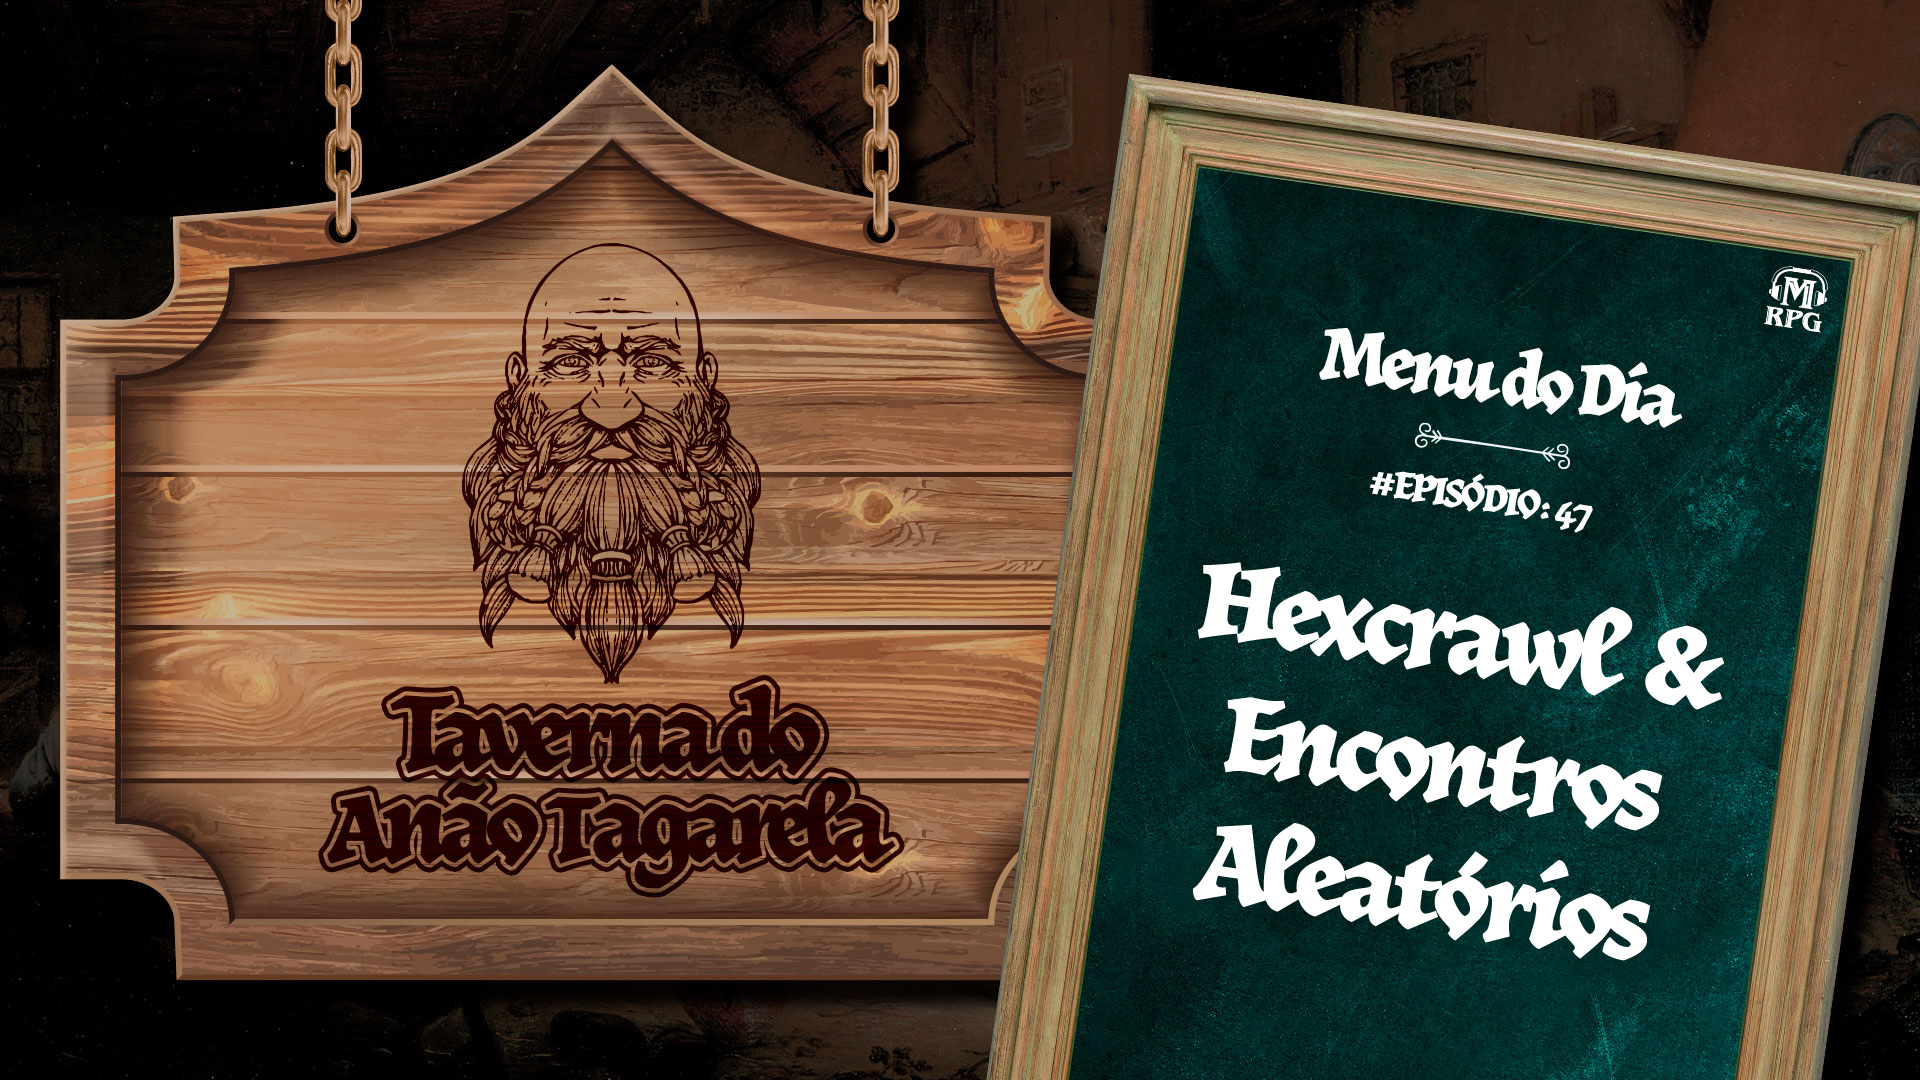 Hexcrawl & Encontros Aleatórios – Taverna do Anão Tagarela #47